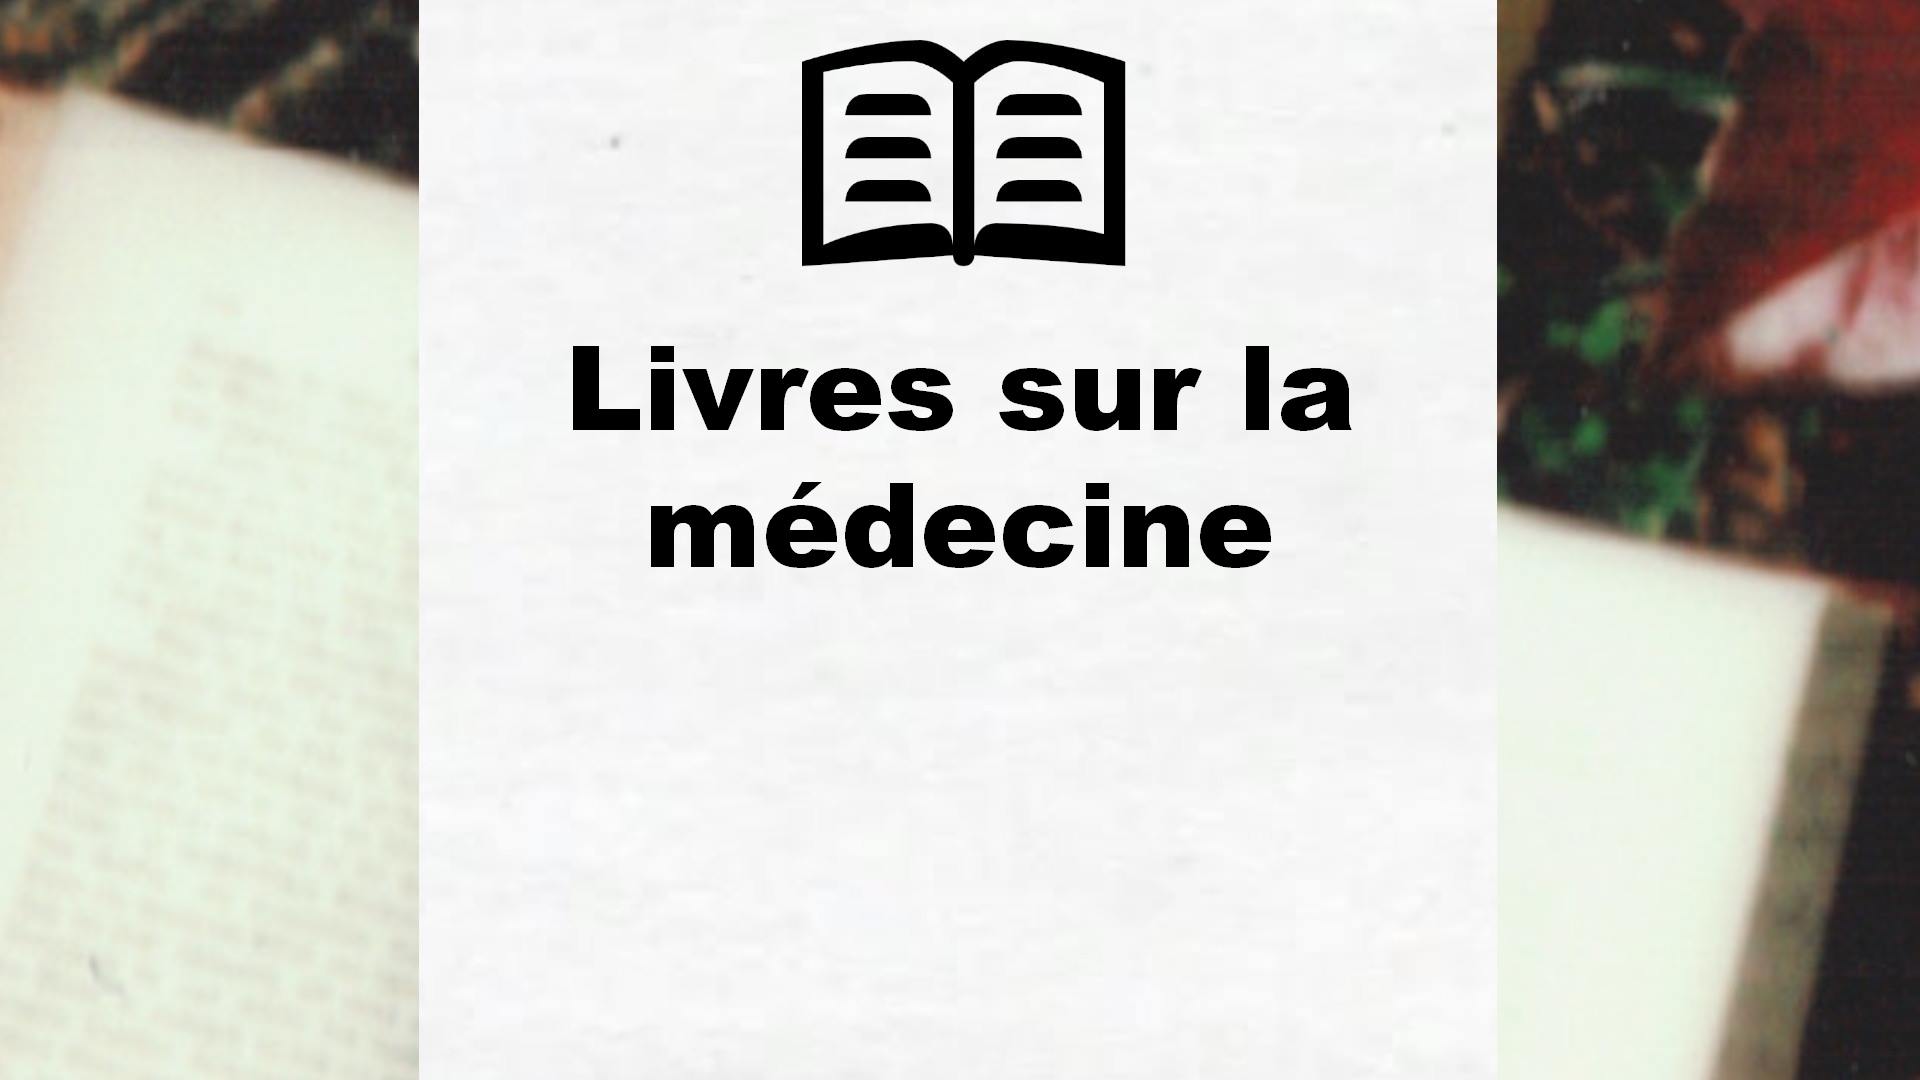 Livres sur la médecine